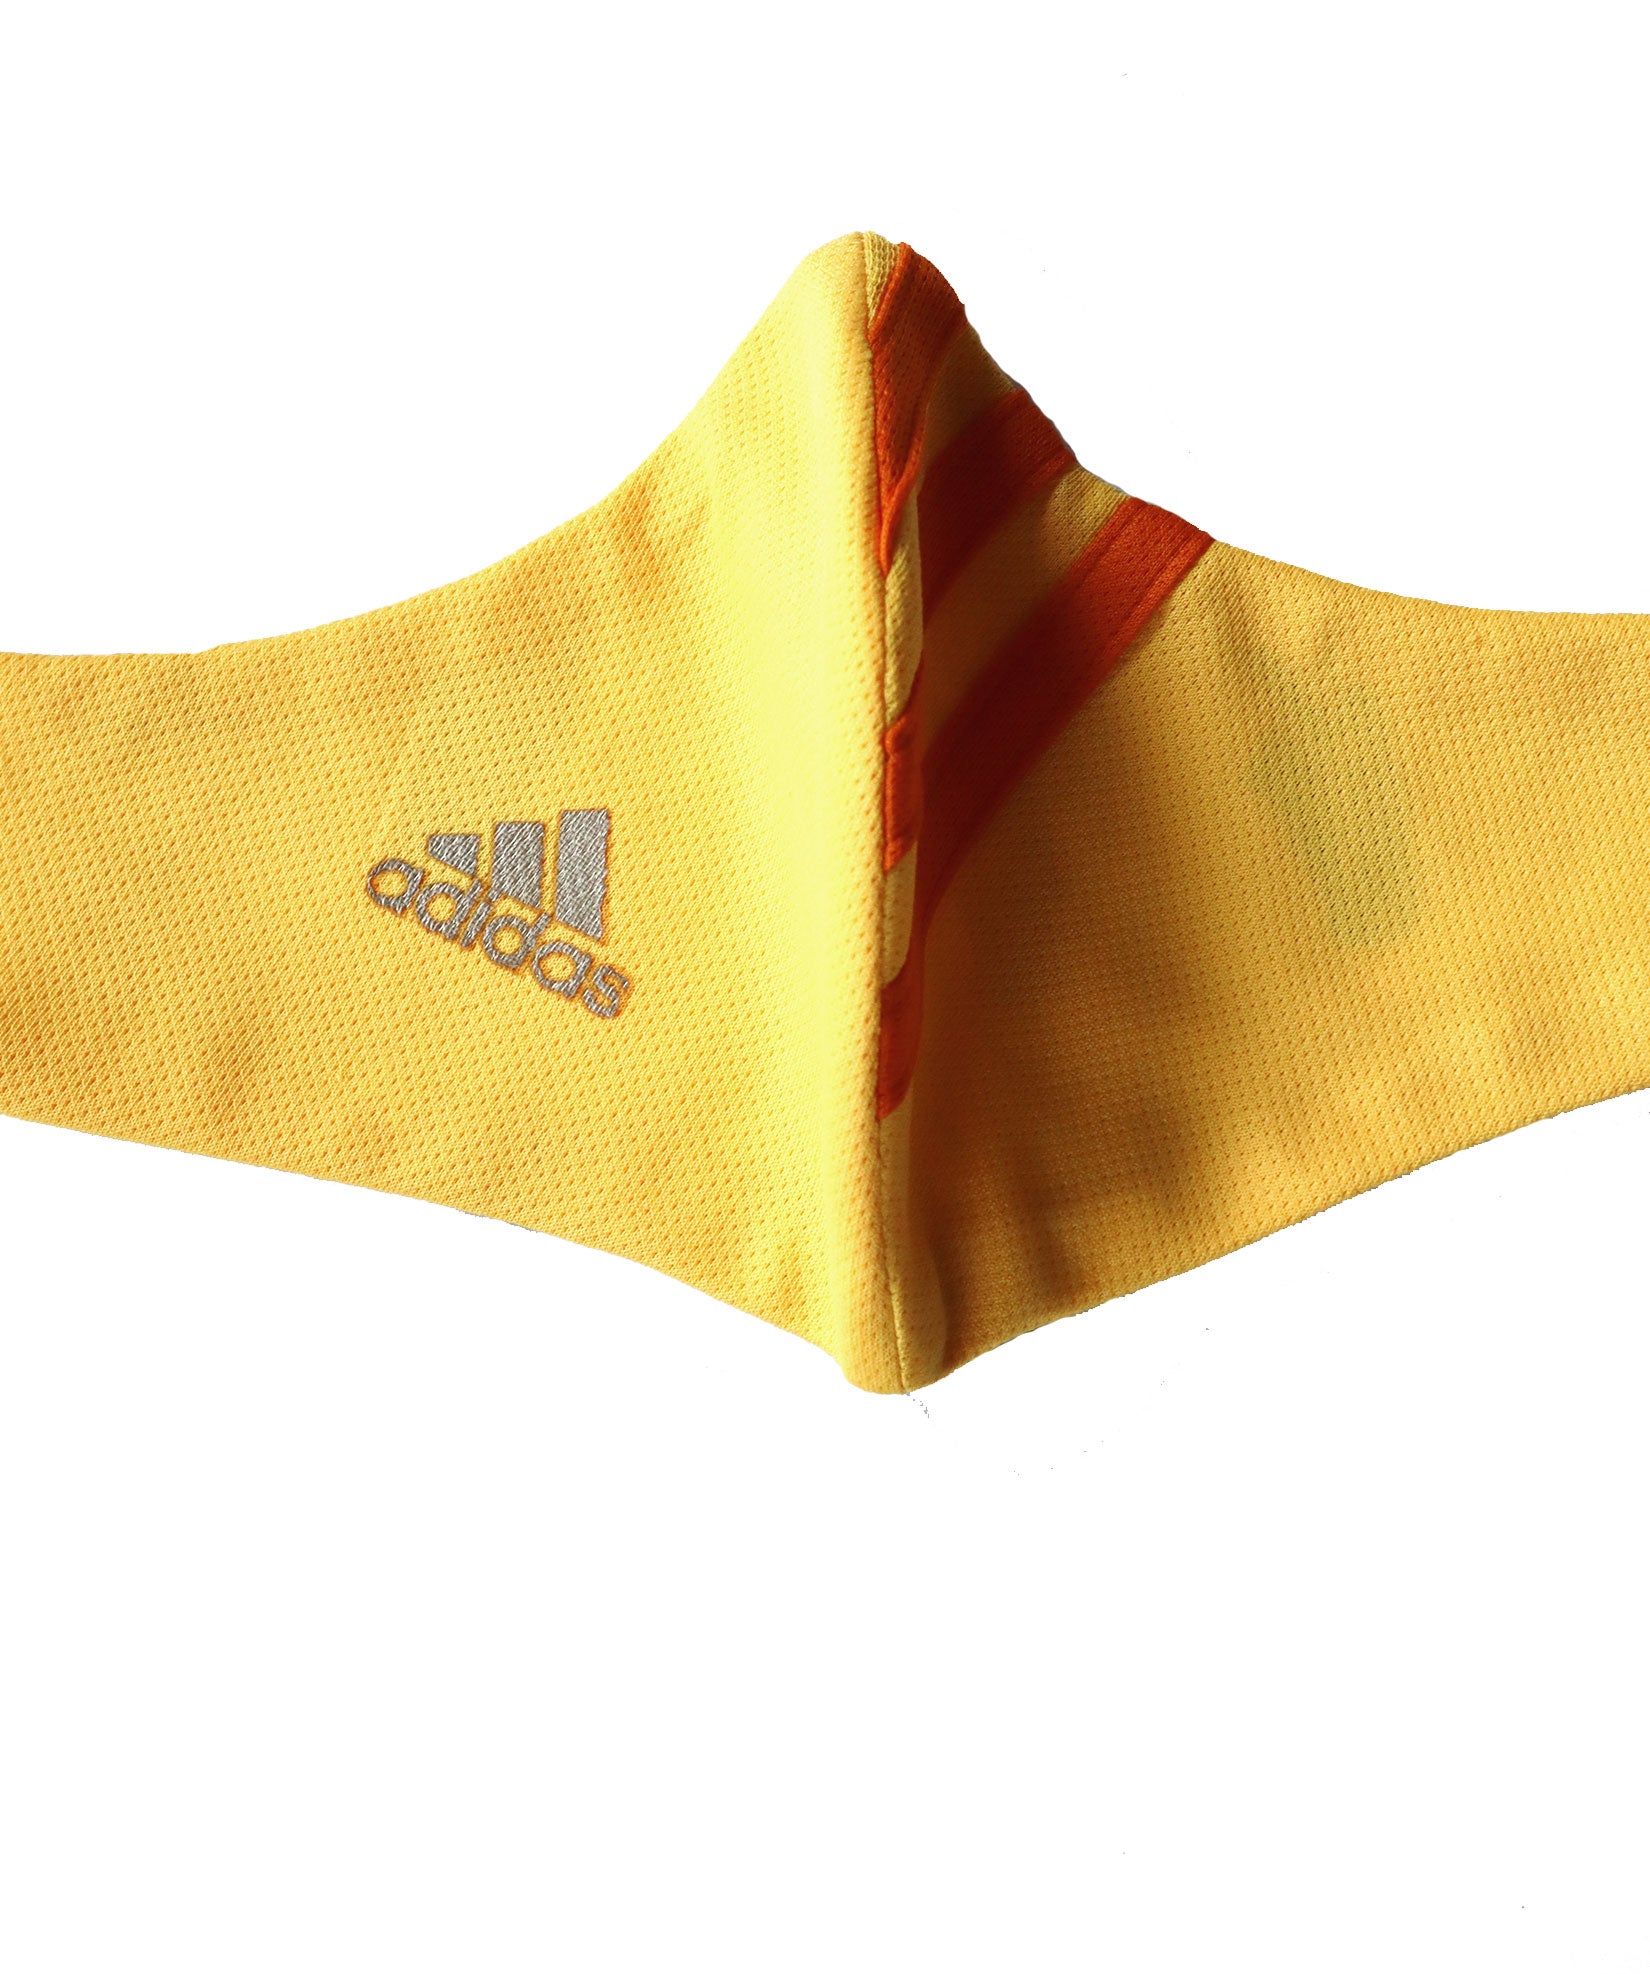 Reversible Flipped Adidas Mask - Yellow/Orange 1